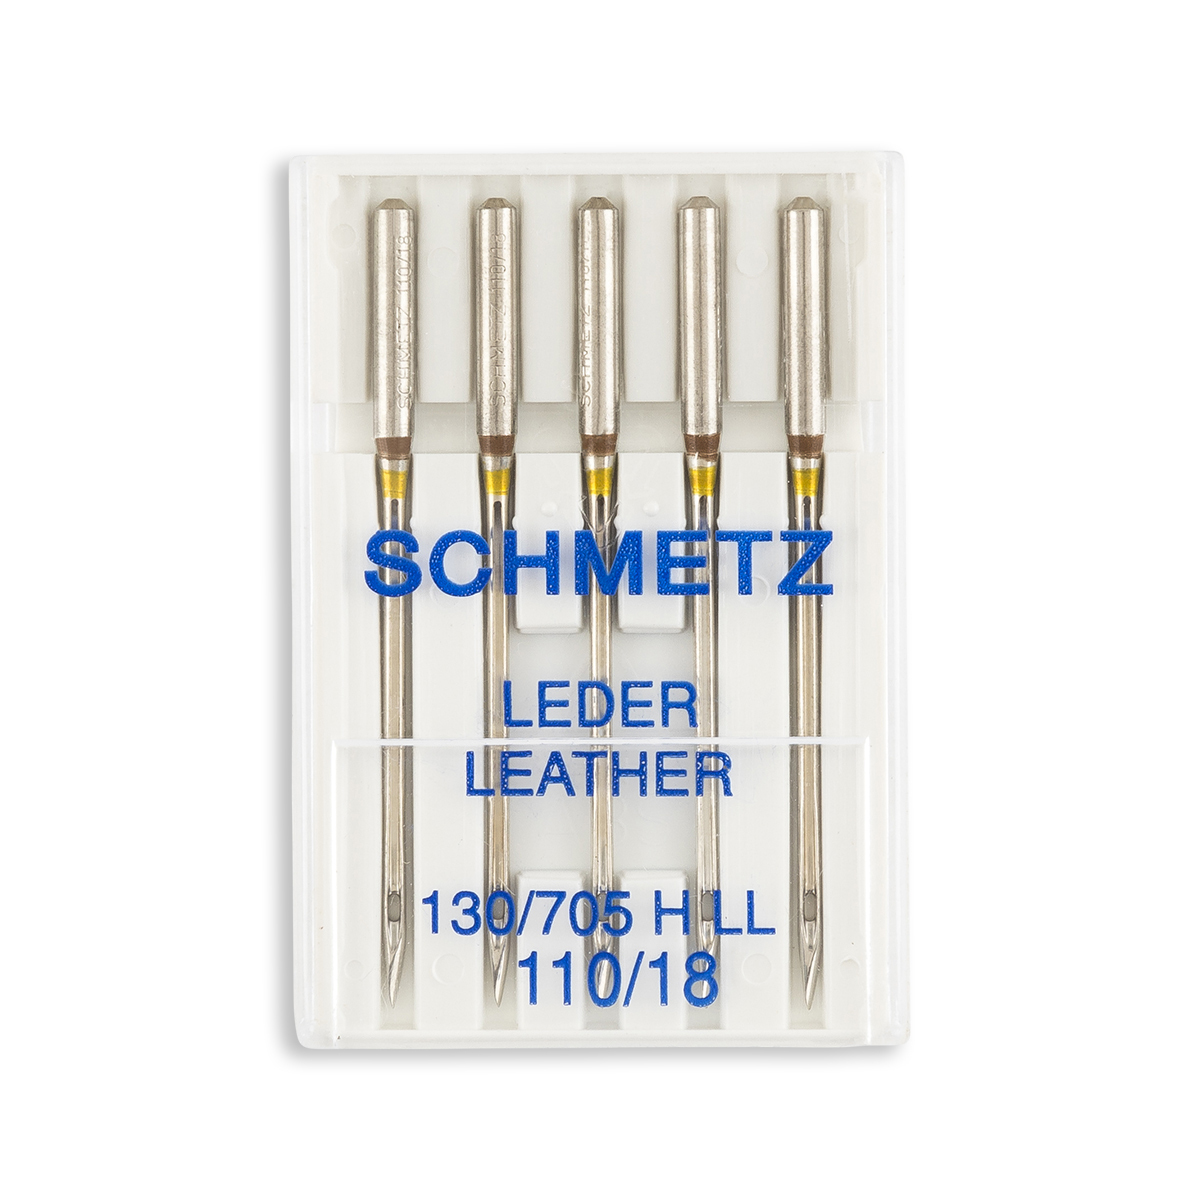 Aiguille schmetz LEDER LEATHER CUIR 130 705 H-LL 90/14 la boite de